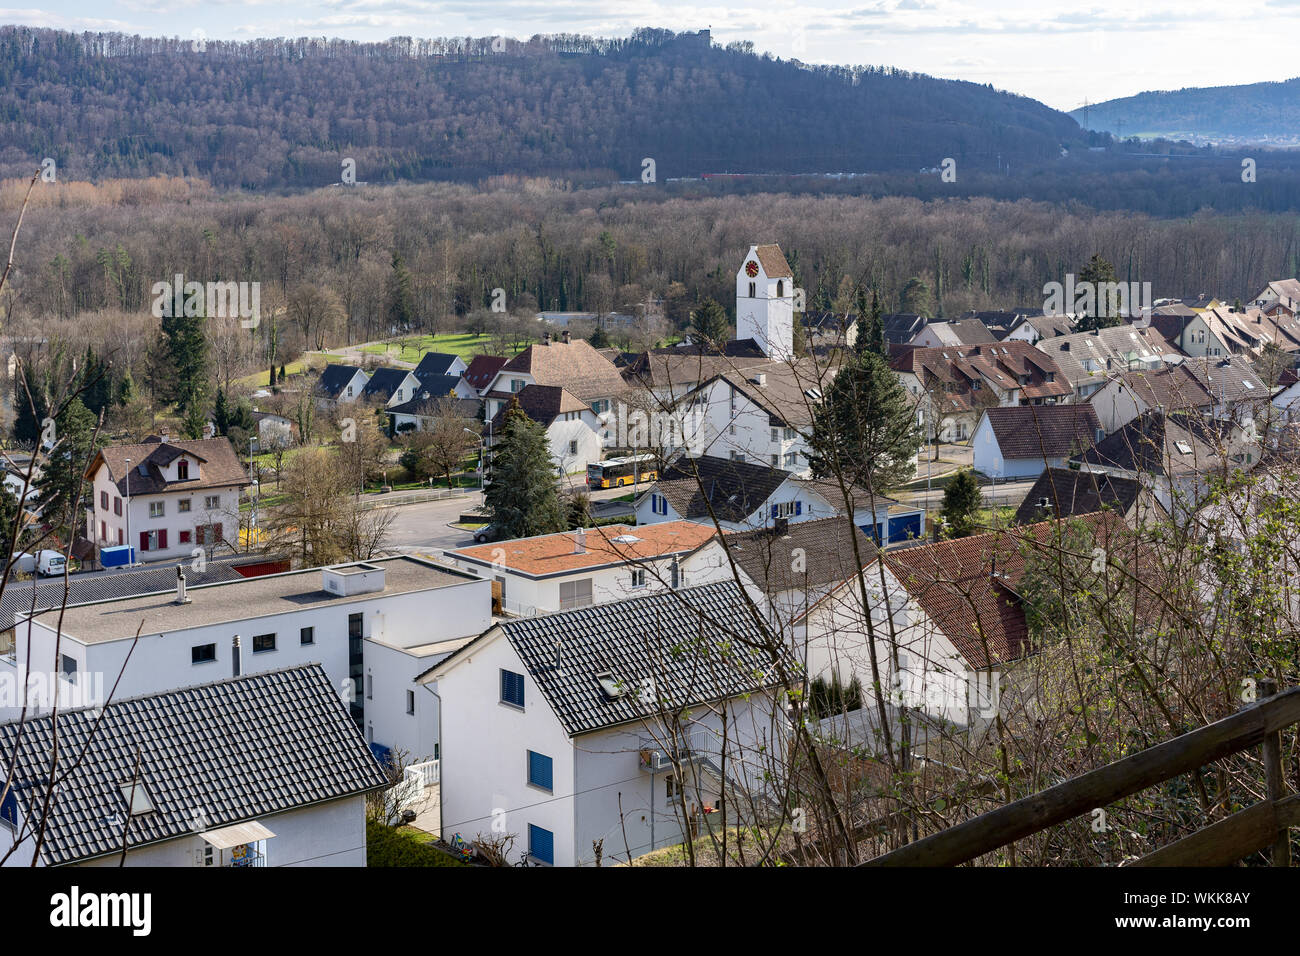 Umiken est un village de la région de Brugg dans le canton suisse d'Argovie. Le village au nord de l'AAR a été jusqu'à la fin de 2009 un organisme indépendant municip Banque D'Images